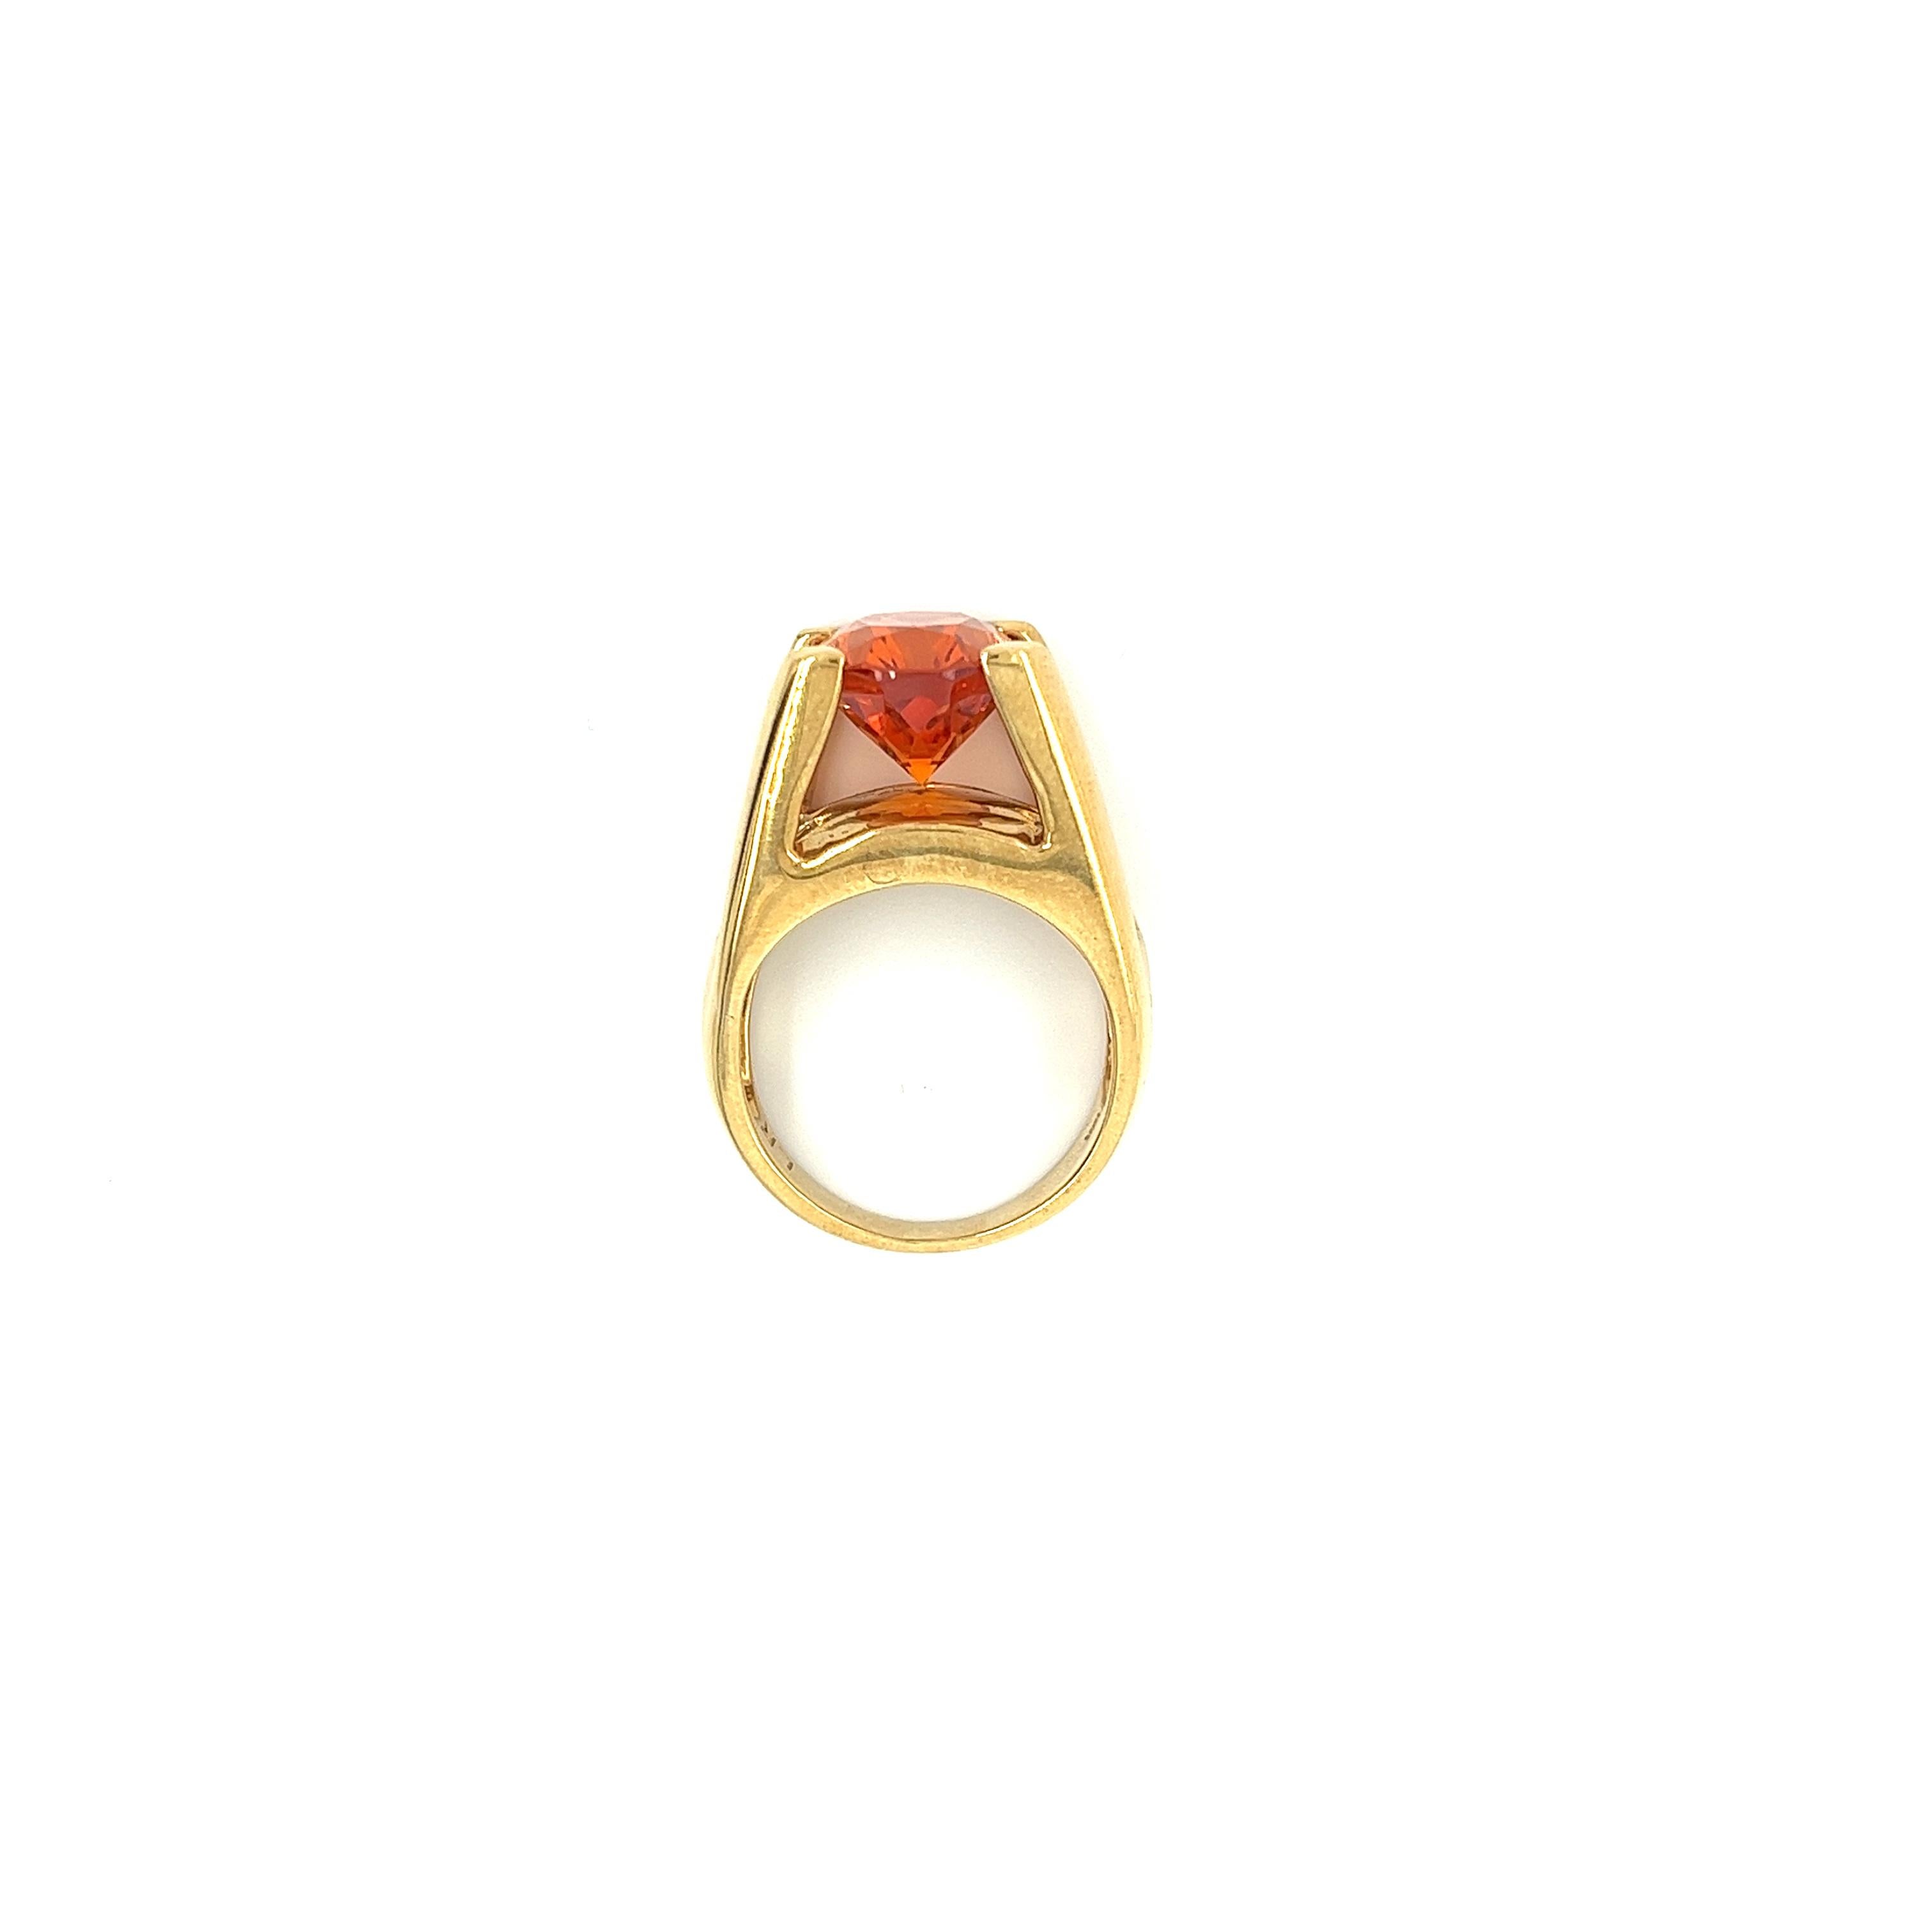 GIA-zertifizierter Unisex-Ring aus 18 Karat Gelbgold mit einem Gewicht von 14,90 Gramm und einem 13,5 Karat schweren Spessartin-Granat im Ovalschliff. Der leuchtend orangefarbene Edelstein ist makellos sauber und glänzend. Eine Explosion von Farbe